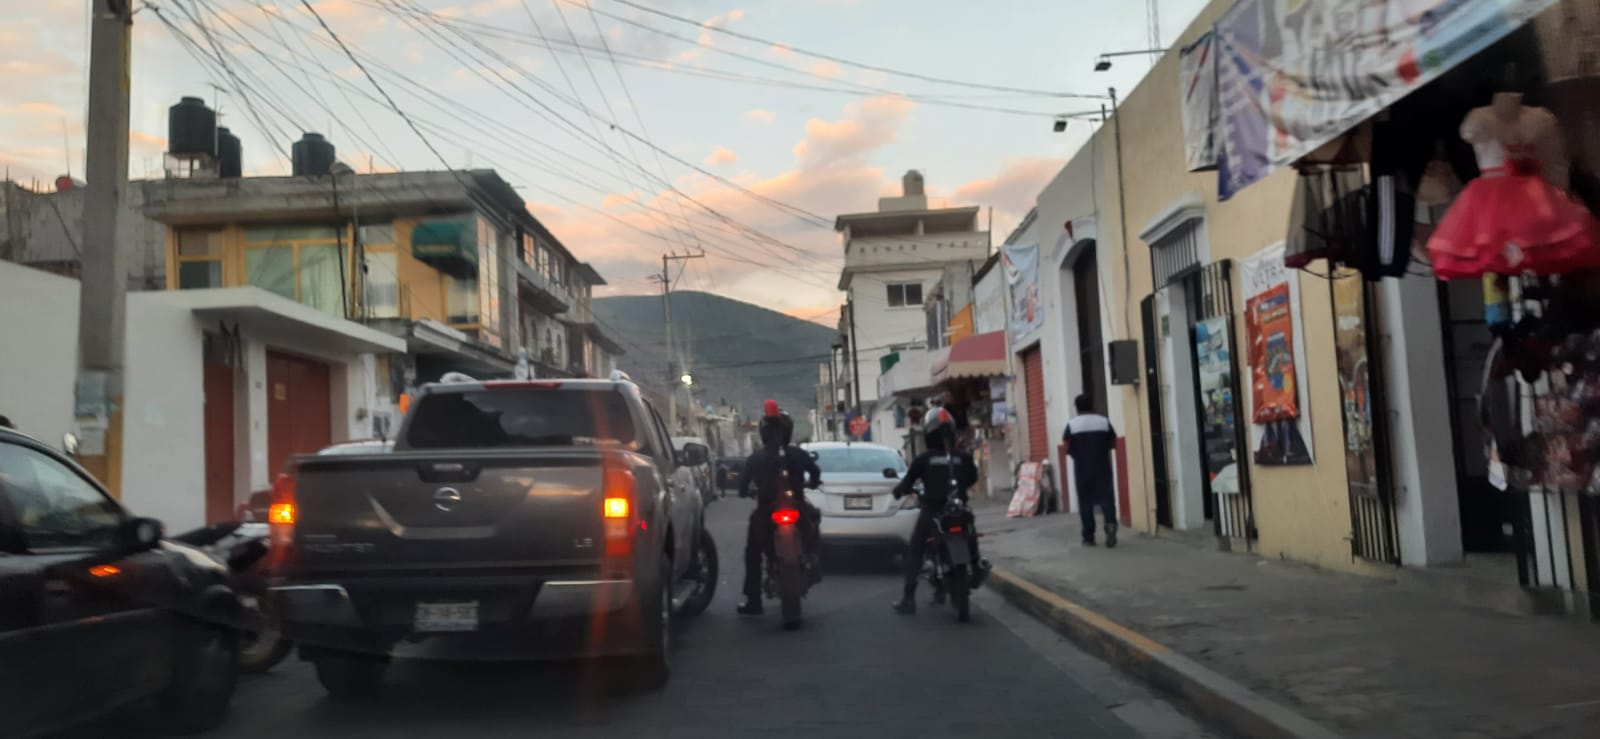 En lo que va del año se han robado 152 vehículos en Tecamachalco 